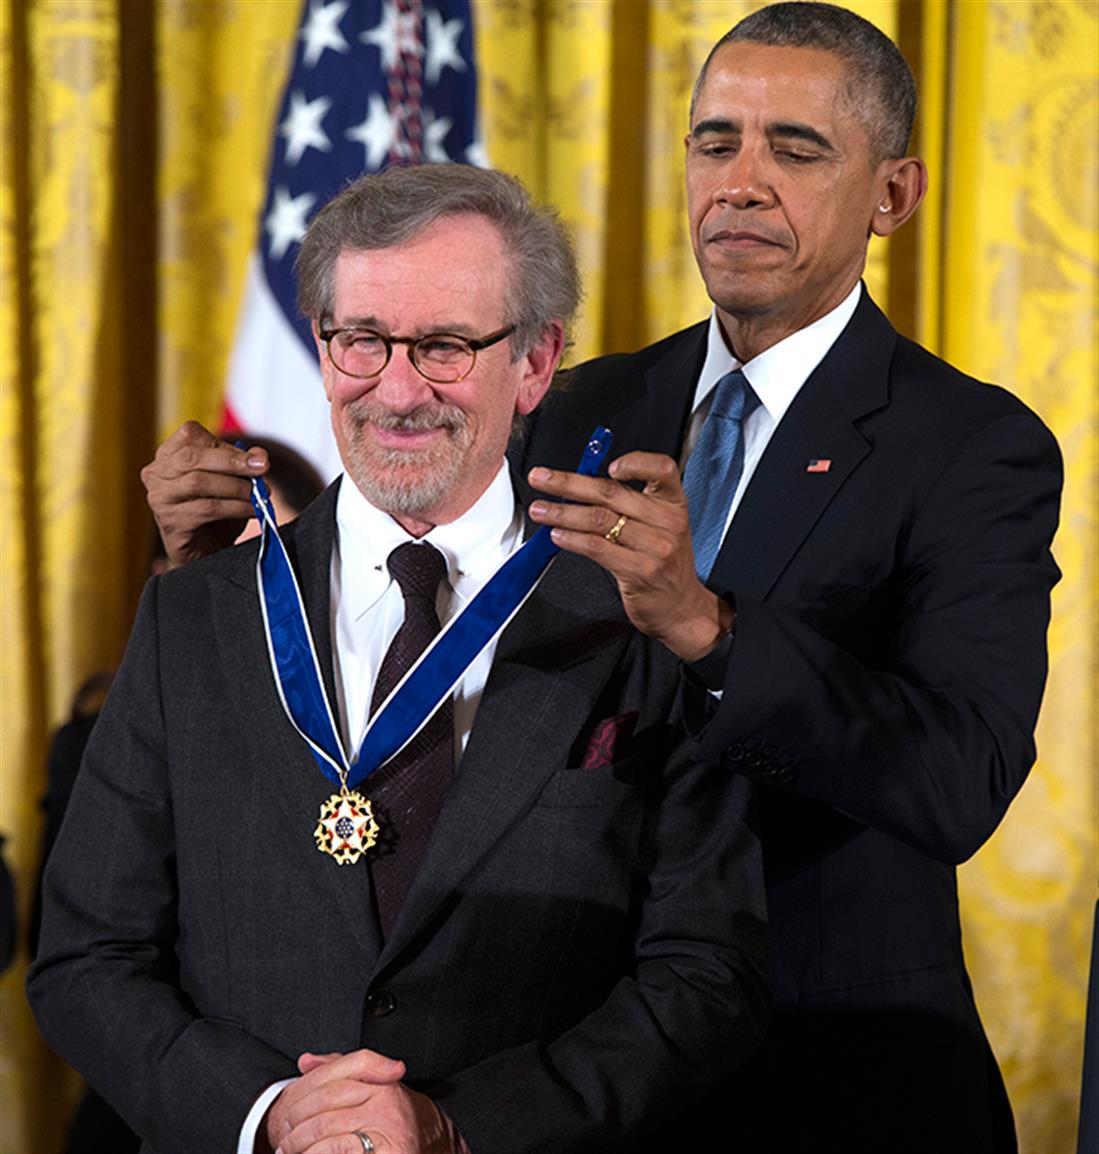 AP - ΗΠΑ - Λευκός Οίκος - Μπάρακ Ομπάμα - Στίβεν Σπίλμπεργκ - τελετή - Μπάρμπρα Στρέιζαντ - Μετάλλιο της Ελευθερίας